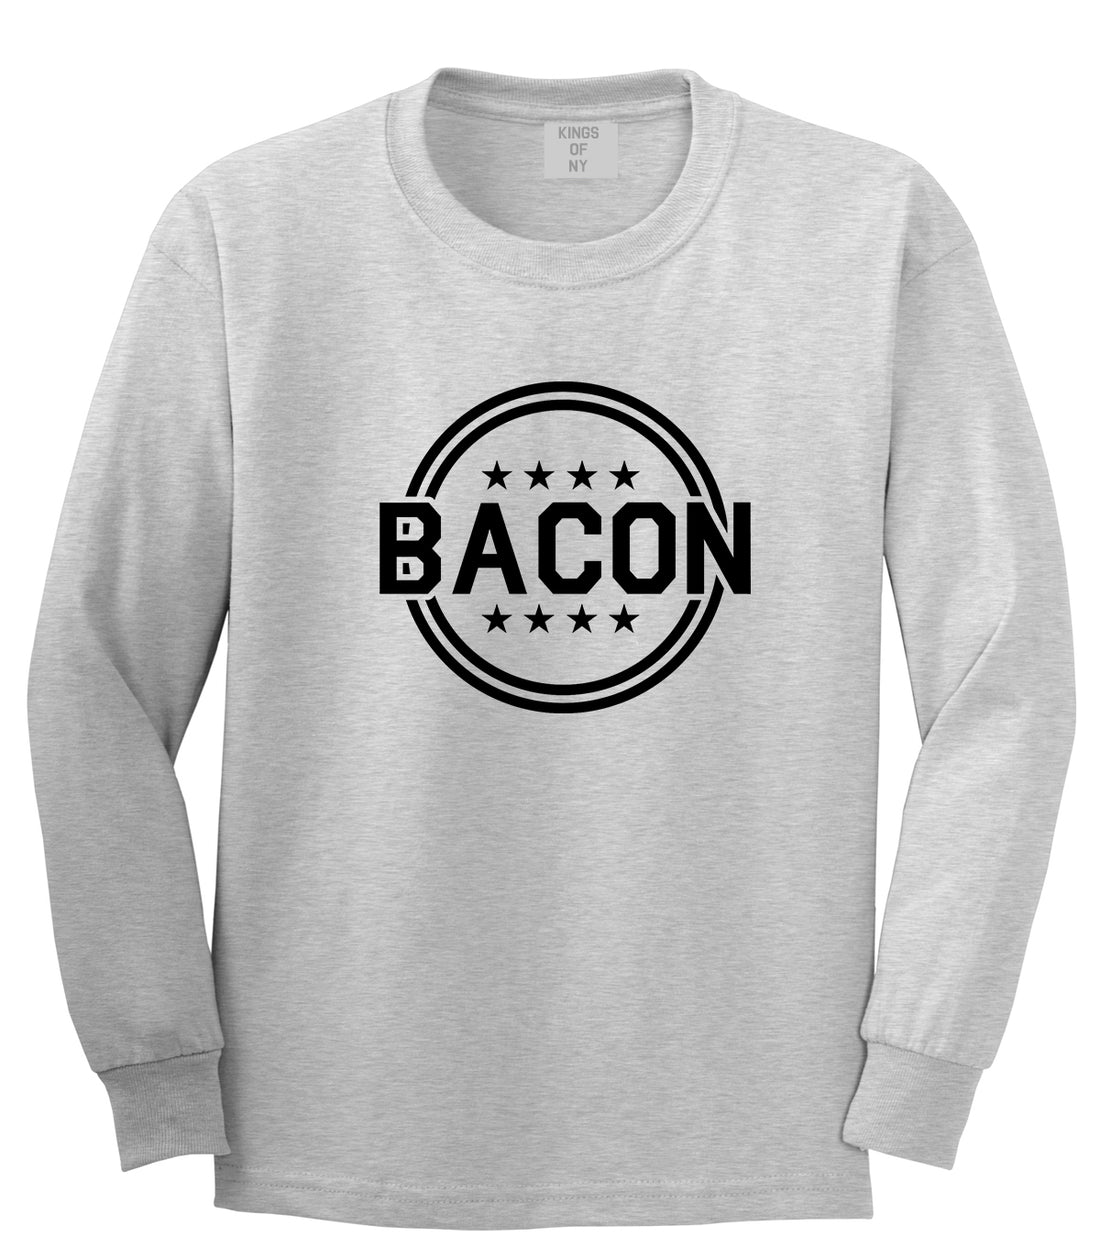 Bacon Stars Grey Long Sleeve T-Shirt by Kings Of NY